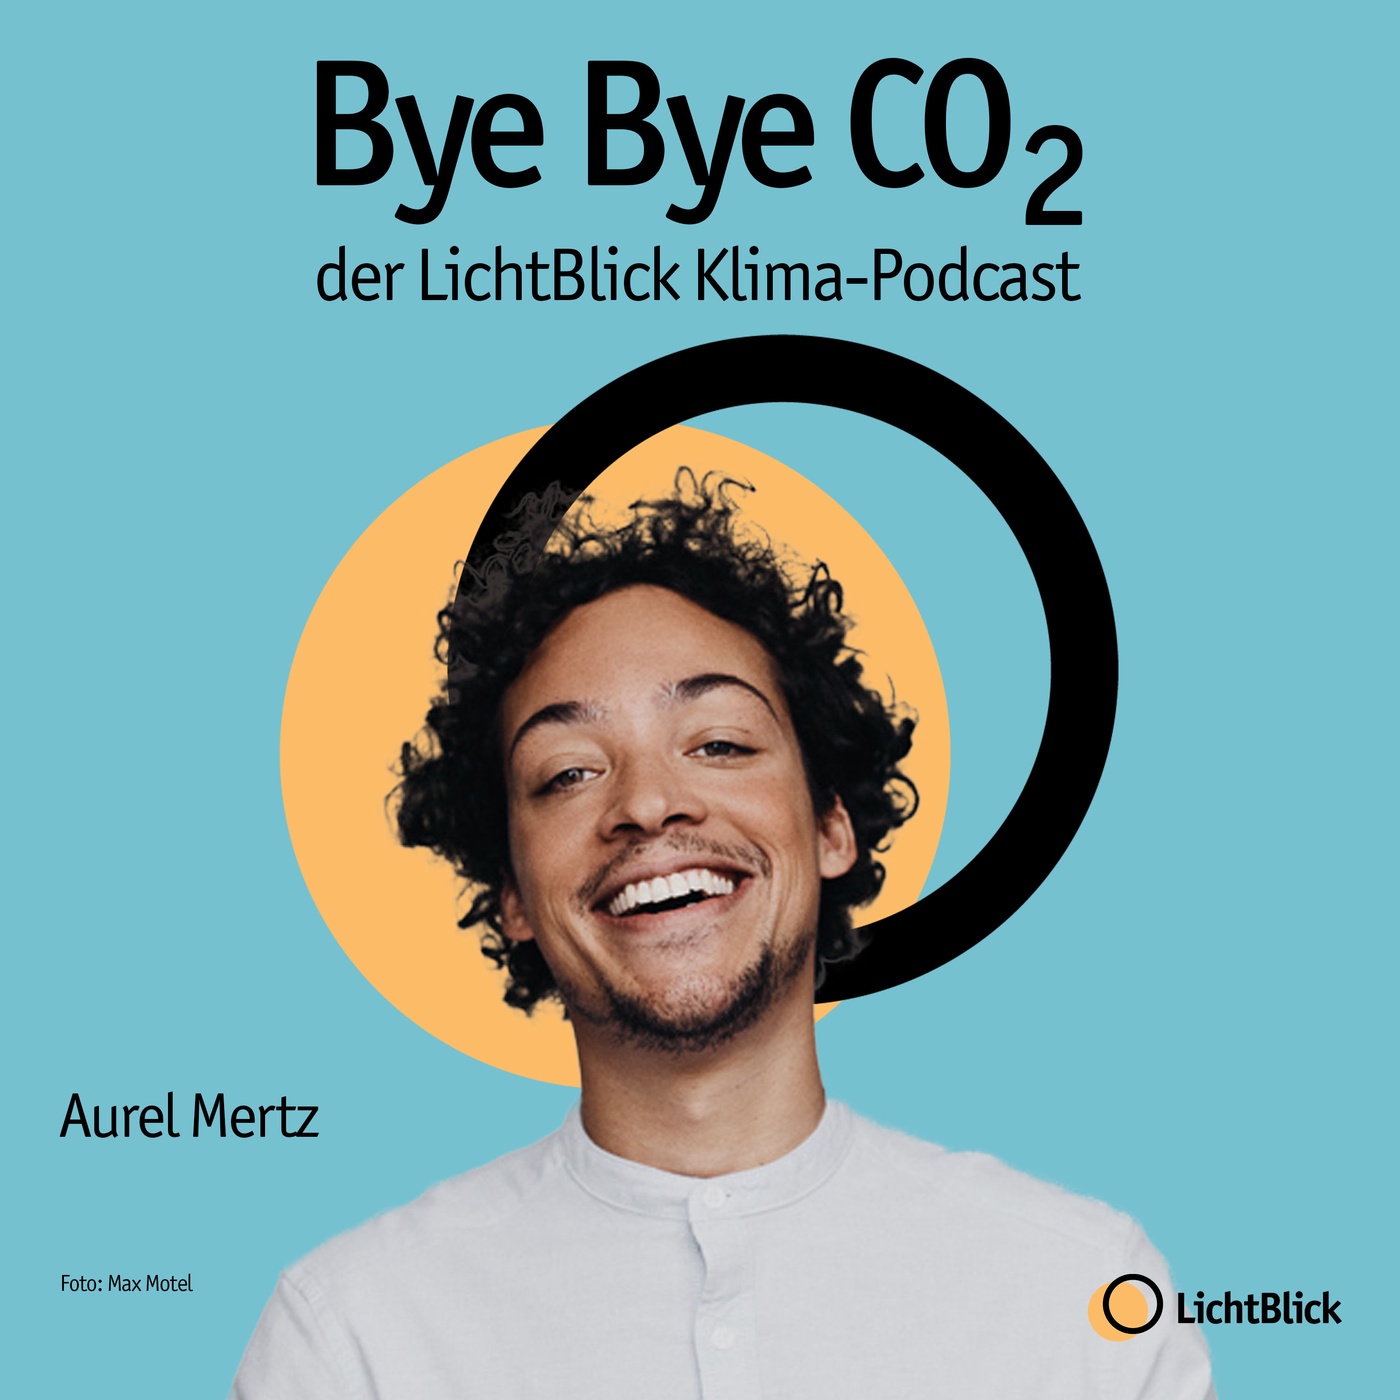 Erstmal lachen, dann aktiv werden - Aurel Mertz über politische Satire & Klimawandel